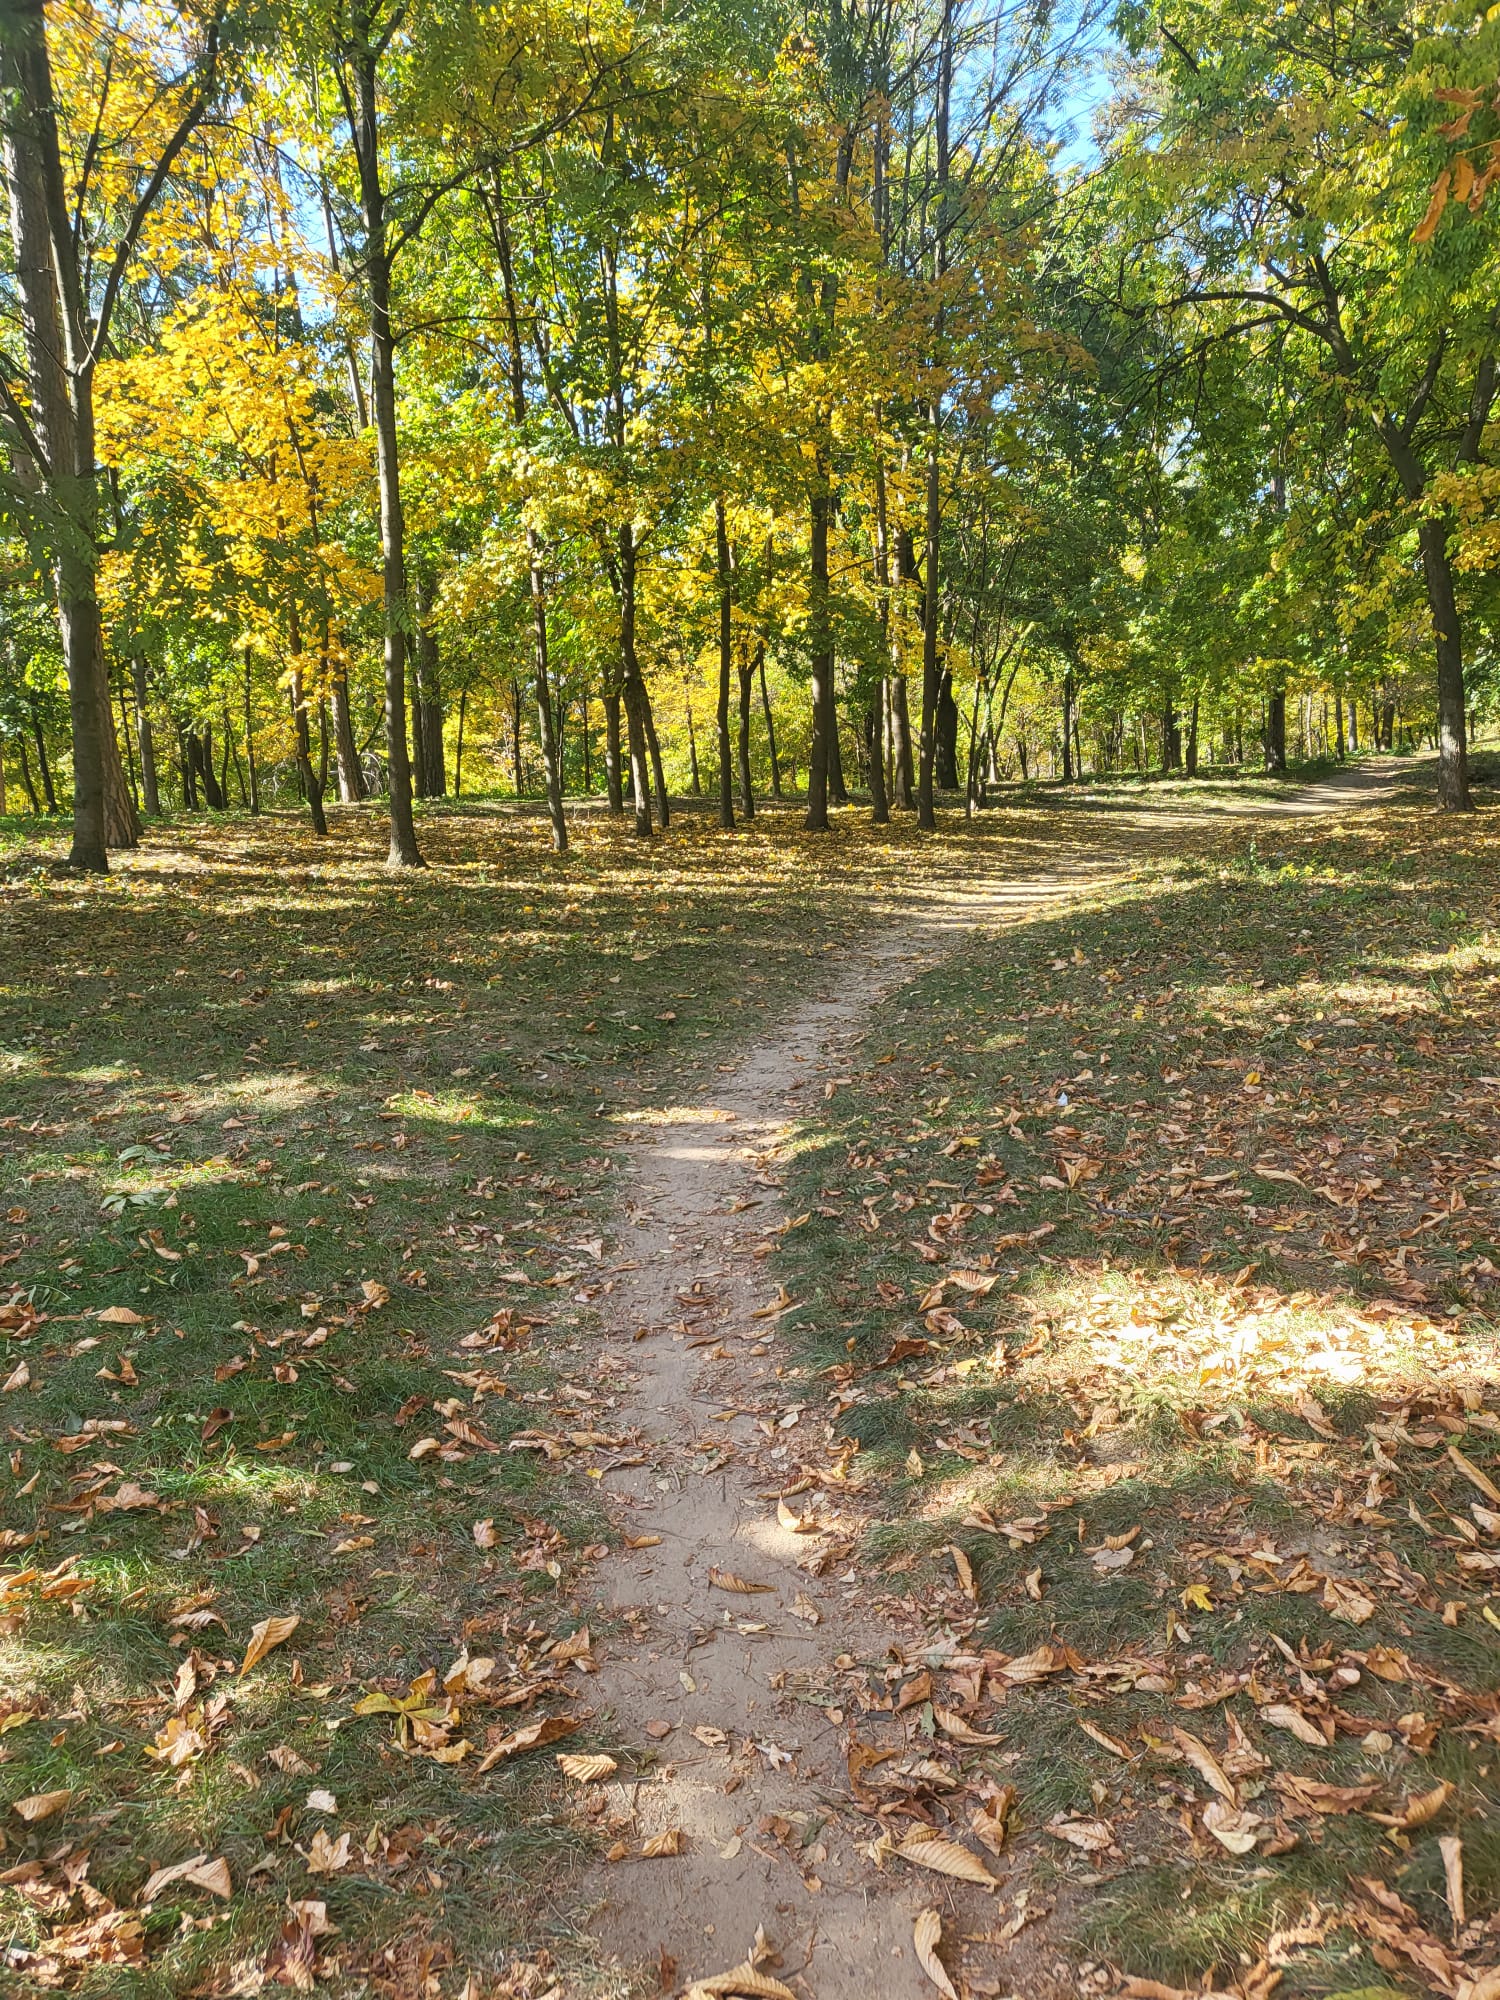 A path through a wood